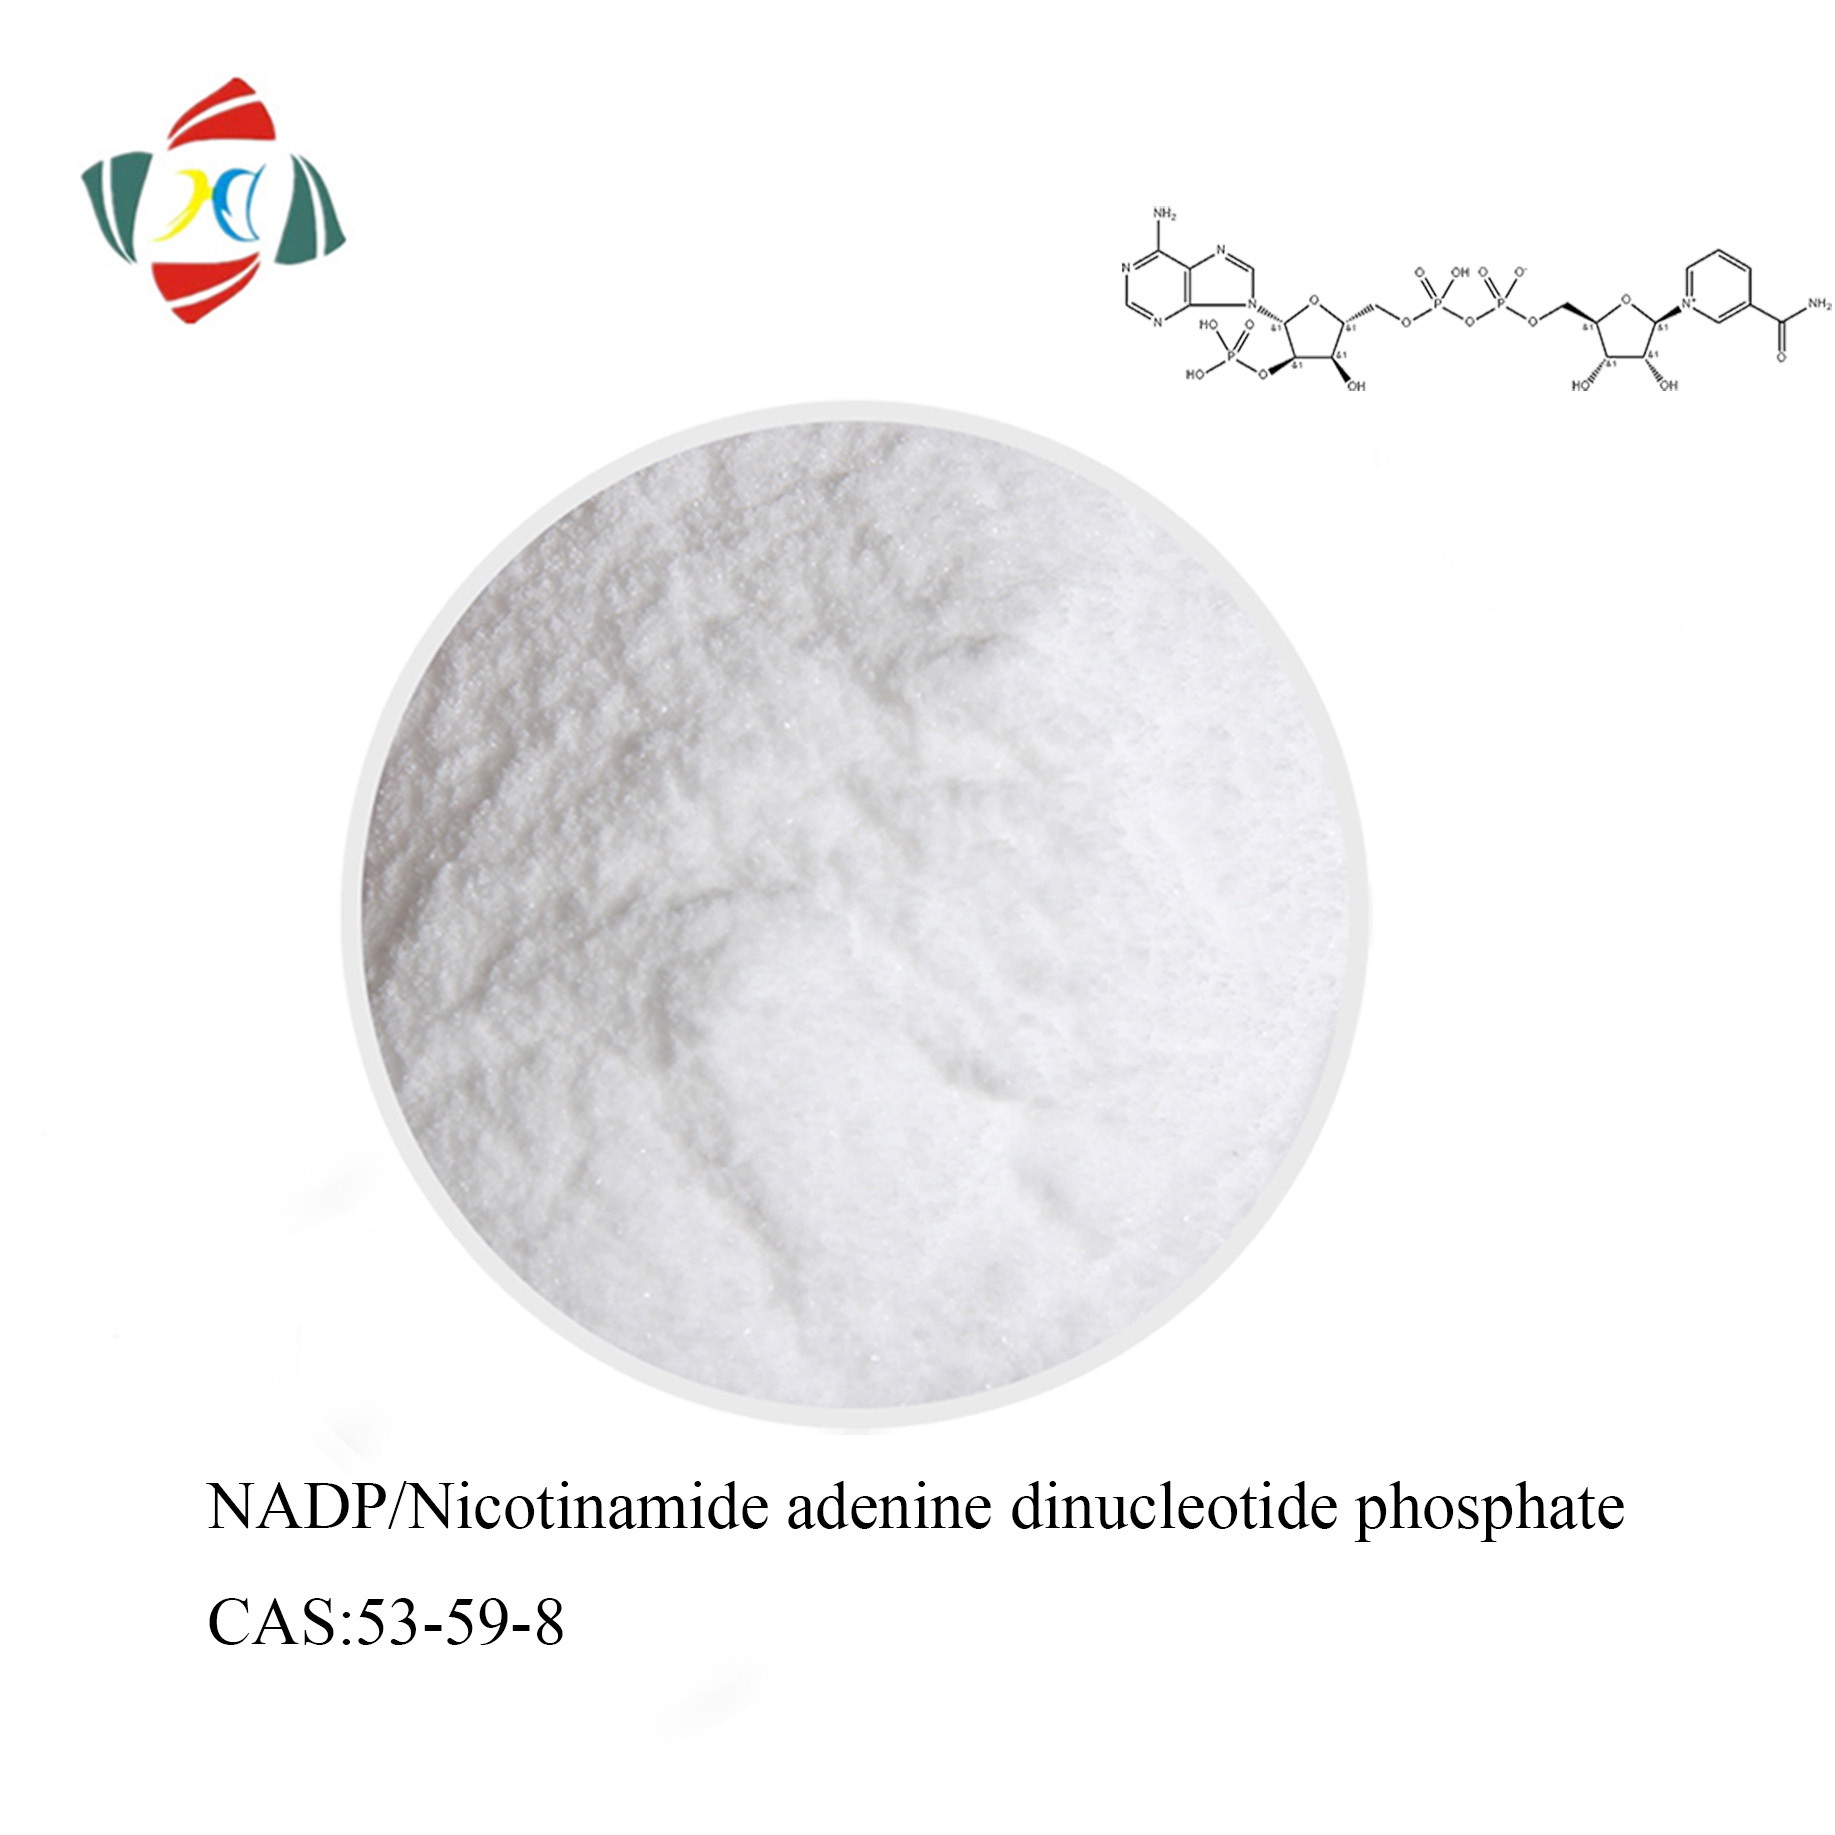 購入ベータニコチンアミドアデニンジヌクレオチドリン酸/NADPCAS 53-59-8,ベータニコチンアミドアデニンジヌクレオチドリン酸/NADPCAS 53-59-8価格,ベータニコチンアミドアデニンジヌクレオチドリン酸/NADPCAS 53-59-8ブランド,ベータニコチンアミドアデニンジヌクレオチドリン酸/NADPCAS 53-59-8メーカー,ベータニコチンアミドアデニンジヌクレオチドリン酸/NADPCAS 53-59-8市場,ベータニコチンアミドアデニンジヌクレオチドリン酸/NADPCAS 53-59-8会社